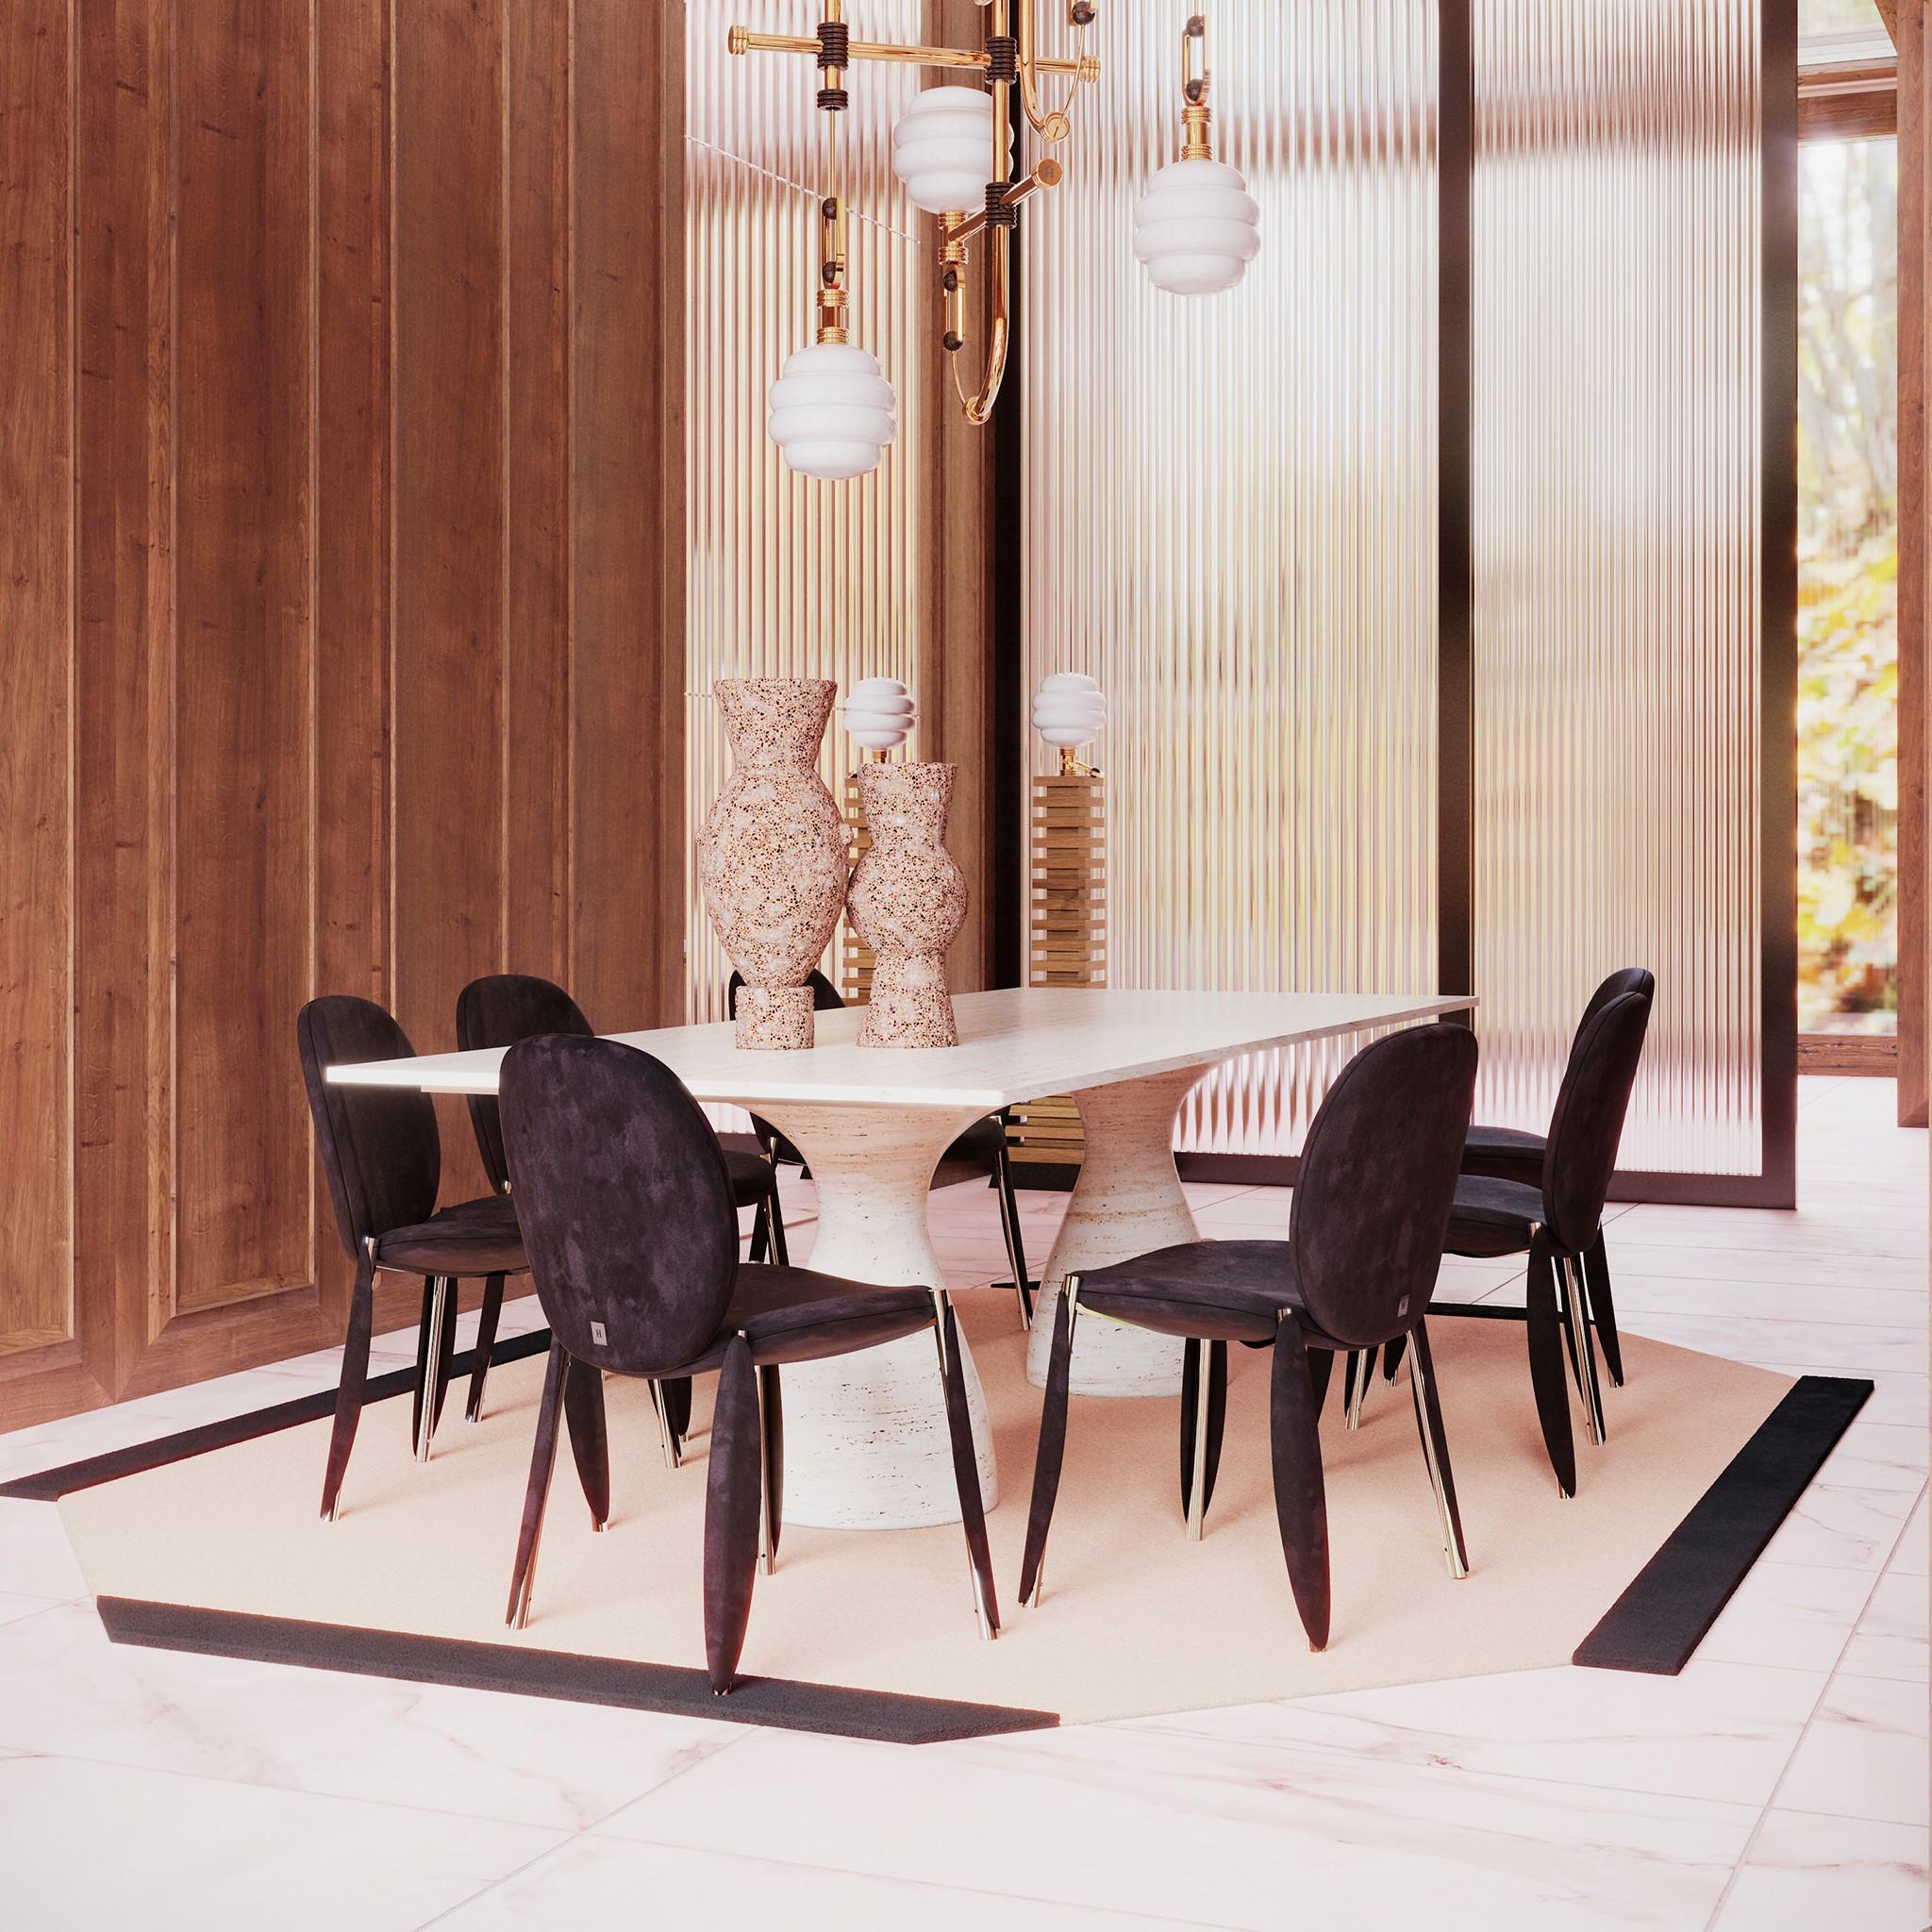 Zimmer Dining Table Travertine ist ein moderner Esstisch mit einer köstlichen Textur und einem reichen Wirbel von natürlichen Farben. Mit seiner eigentümlichen Modernität, der rechteckigen Platte und den klobigen, gedrechselten Beinen schafft der